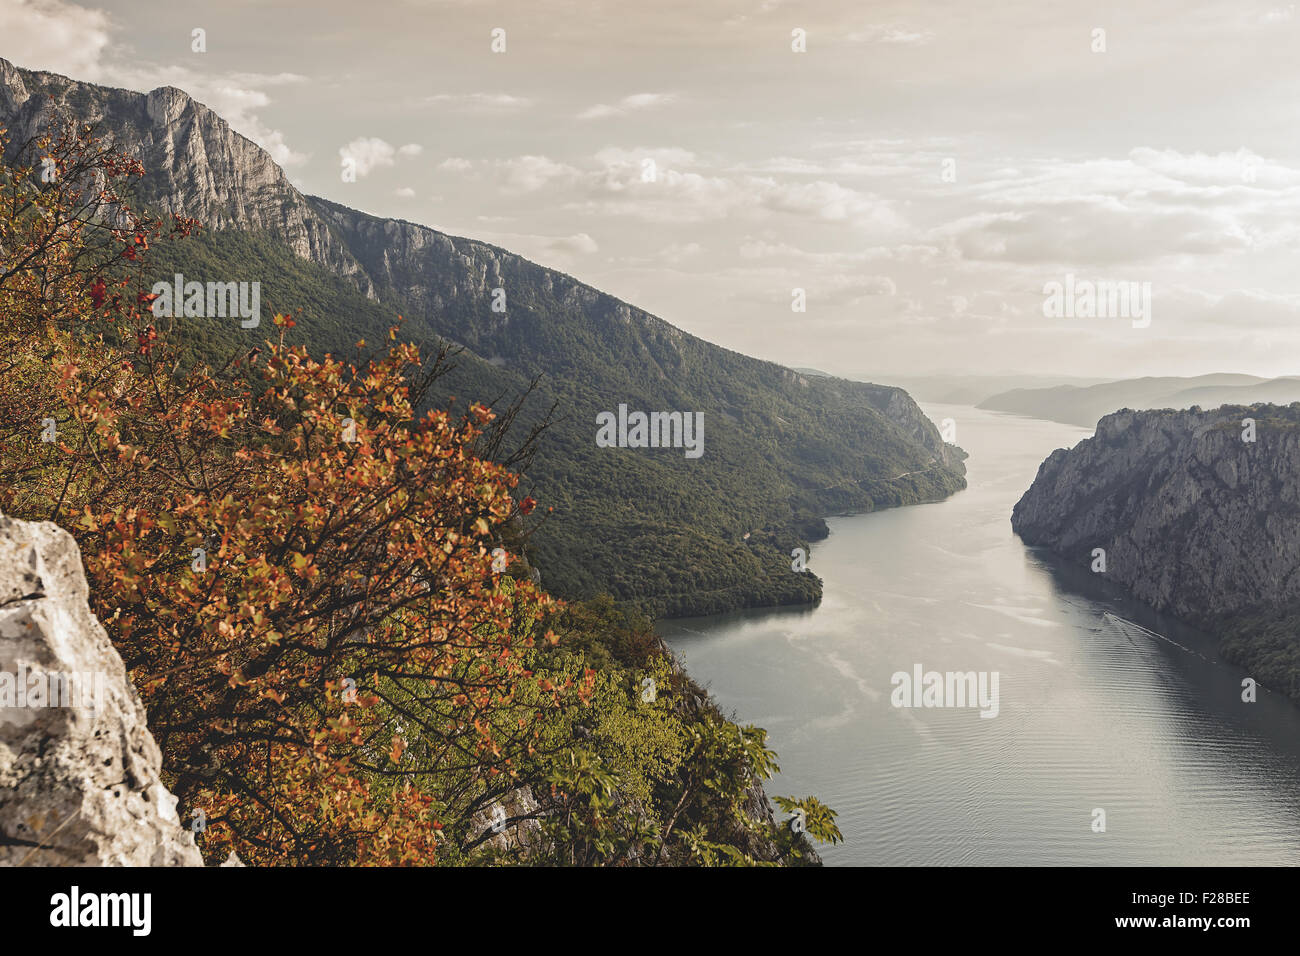 Danube in Djerdap National park, Serbia Stock Photo